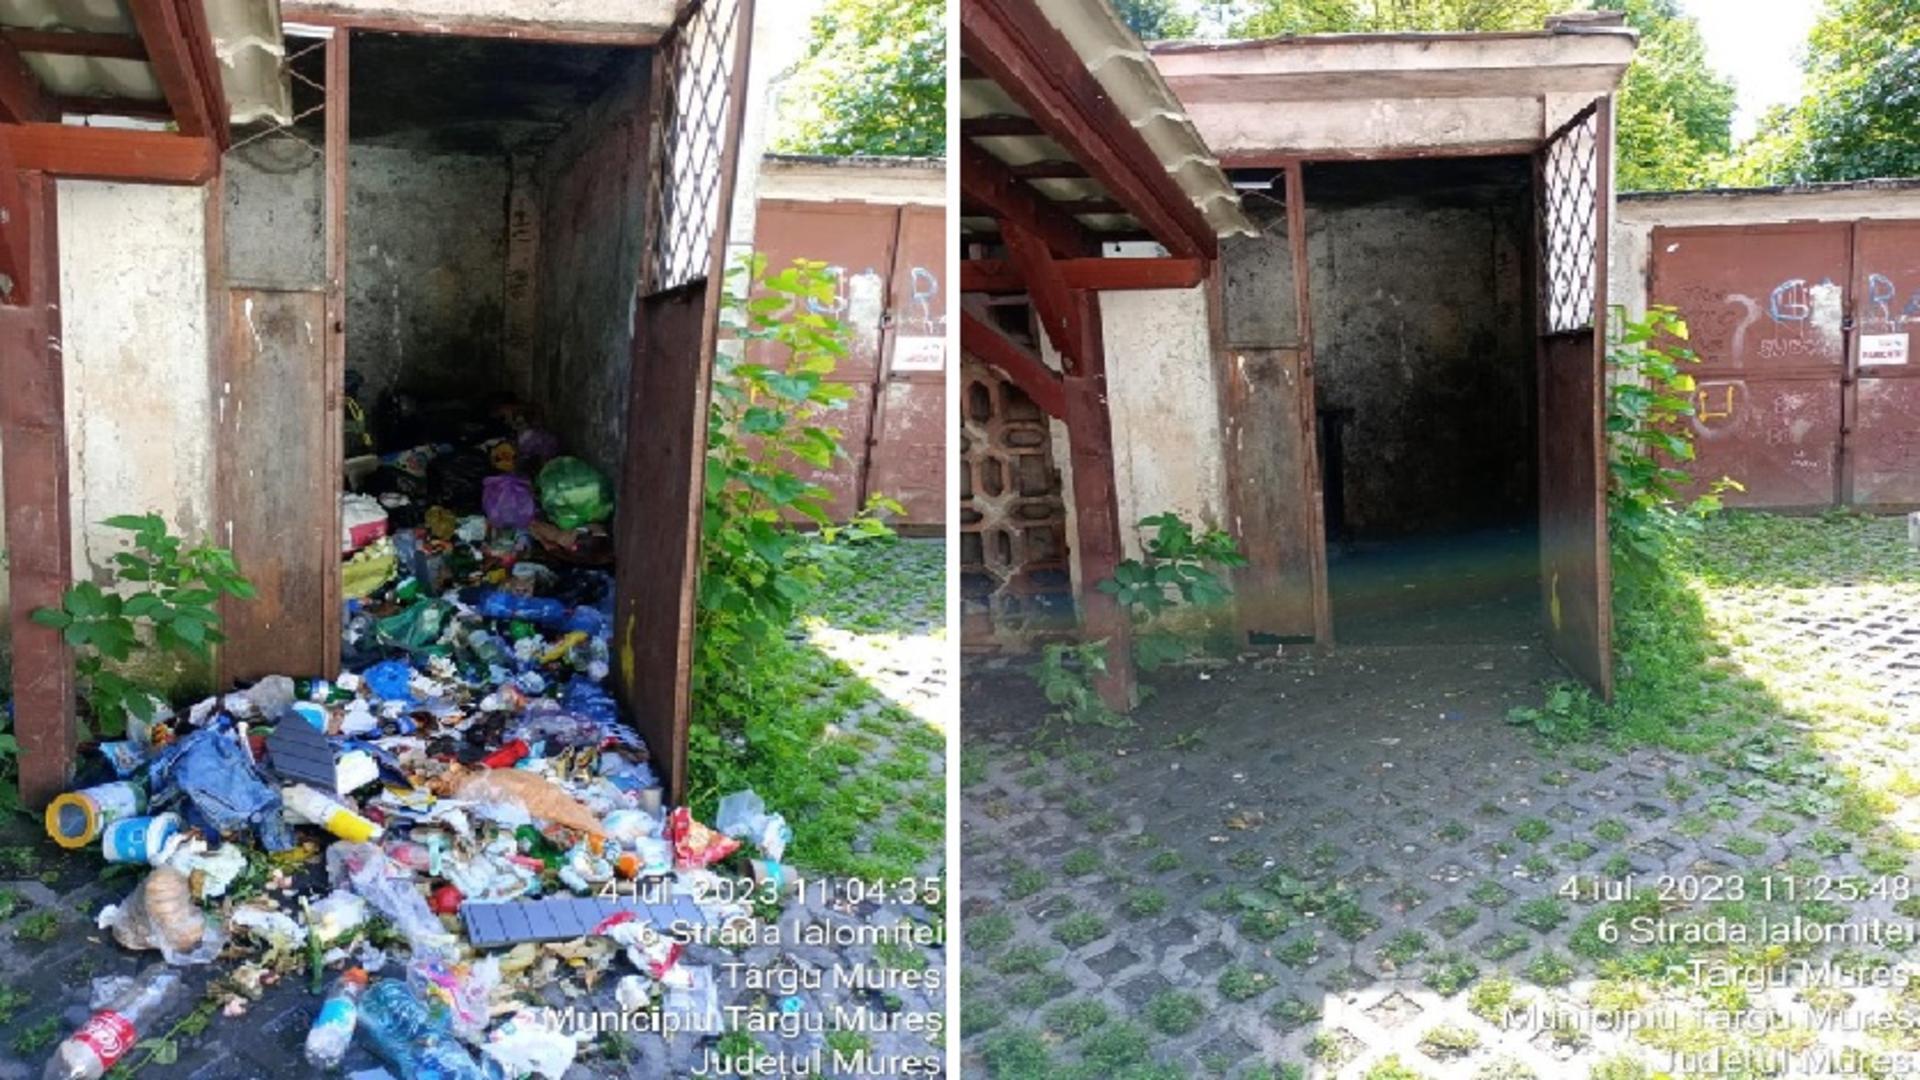 Coșmarul locuitorilor din Târgu Mureș încetează, începând de astăzi: s-a dat startul ridicării gunoiului